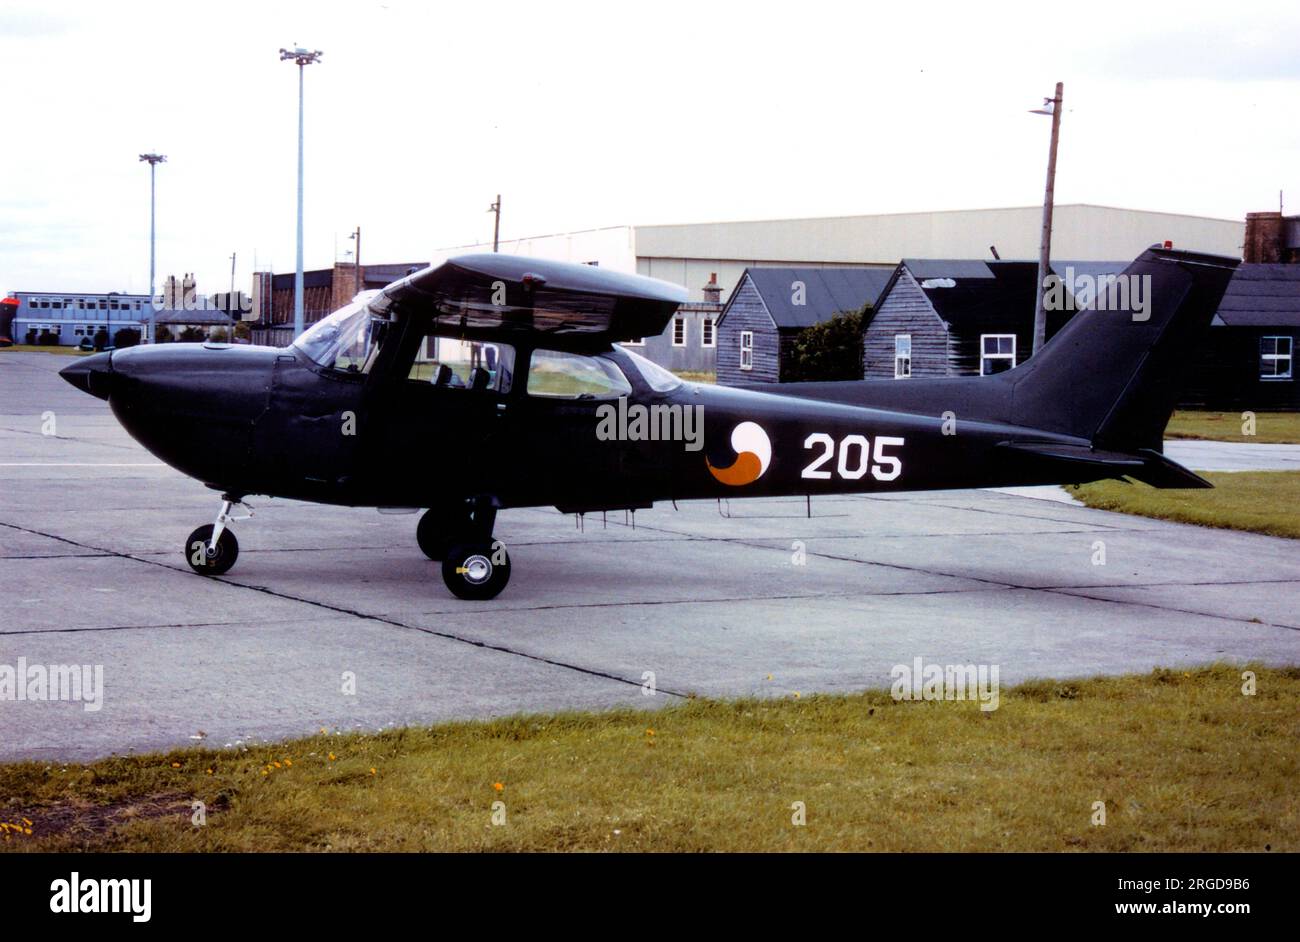 Corps aérien irlandais - Reims-Cessna FR172H Reims Rocket 205 (msn 0305 Banque D'Images